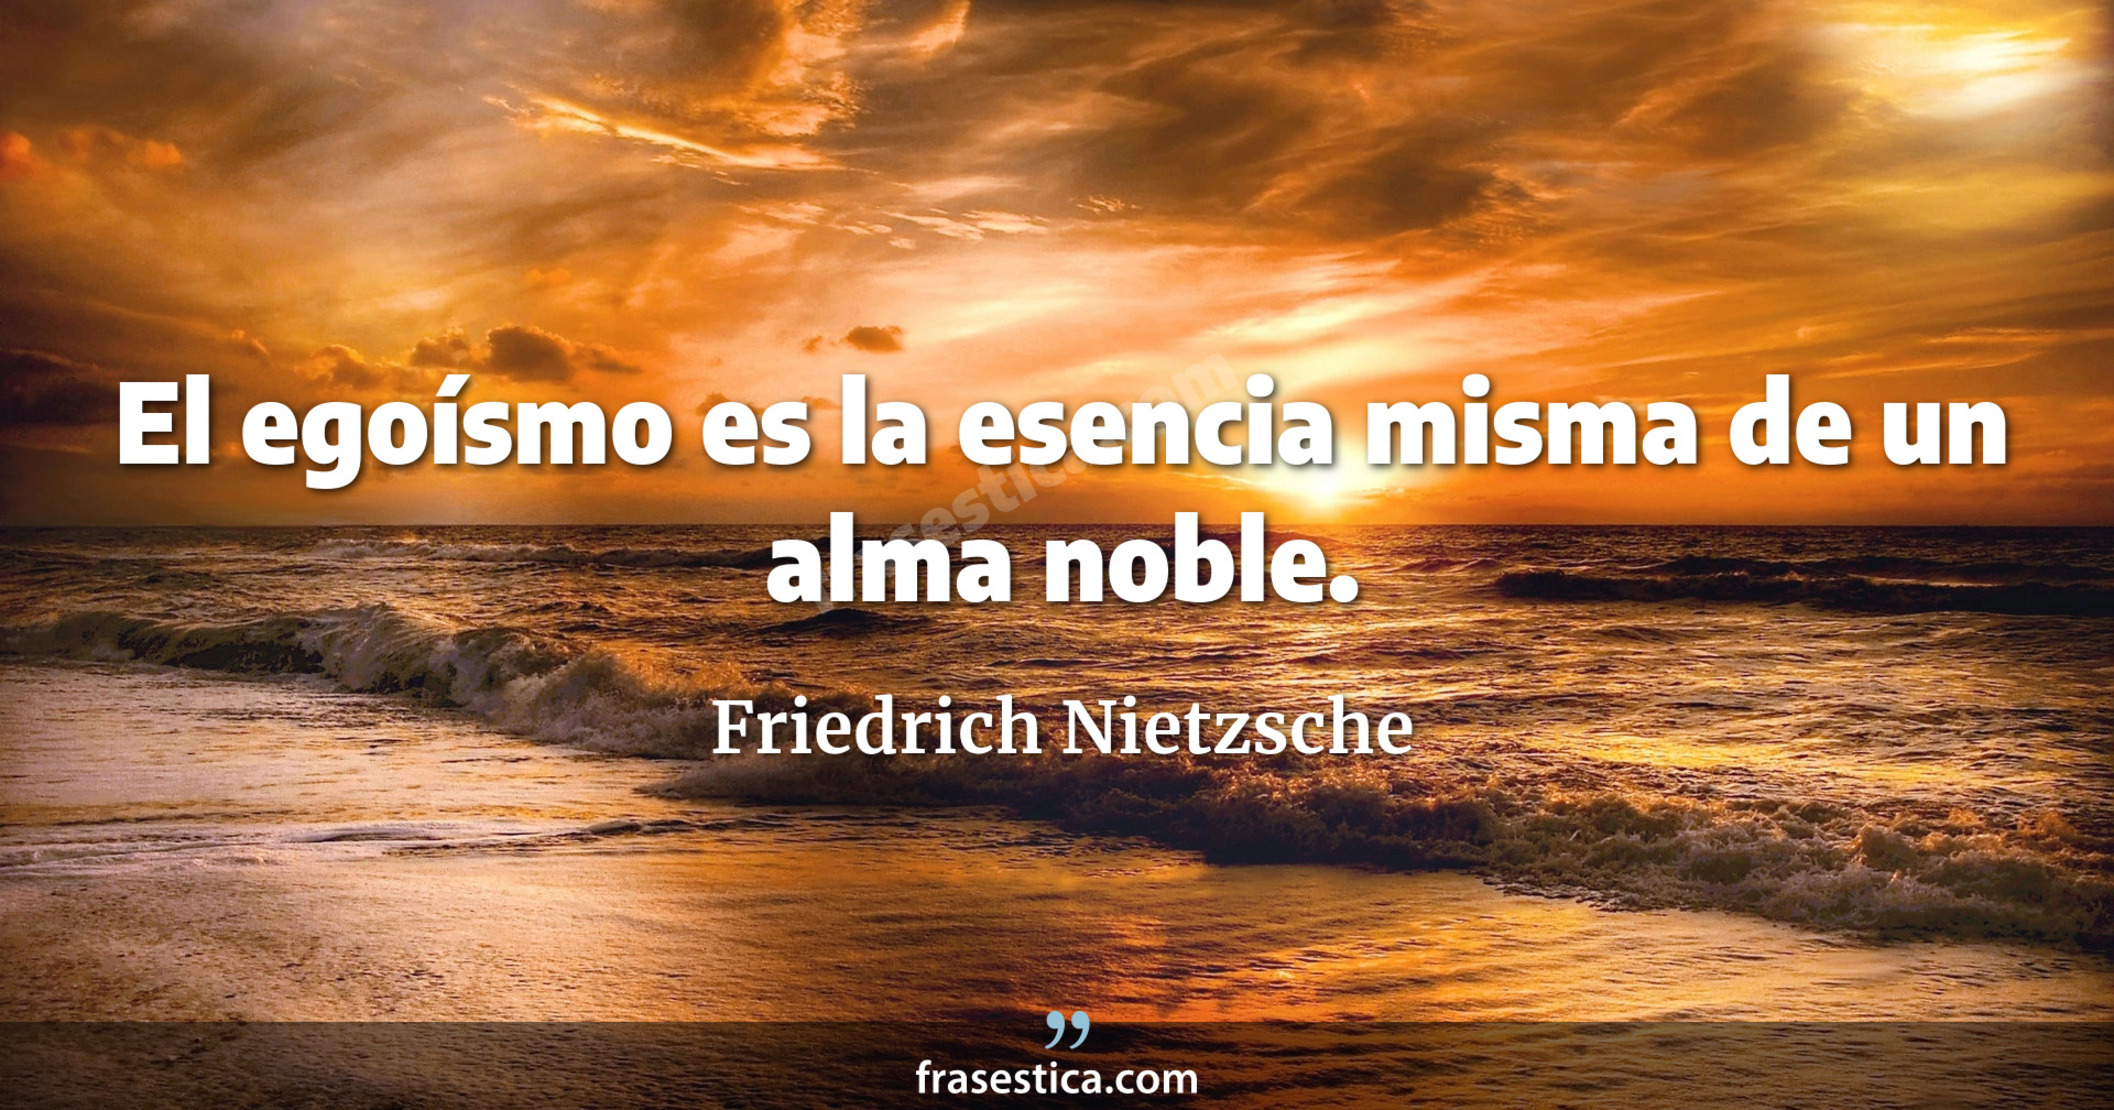 El egoísmo es la esencia misma de un alma noble. - Friedrich Nietzsche